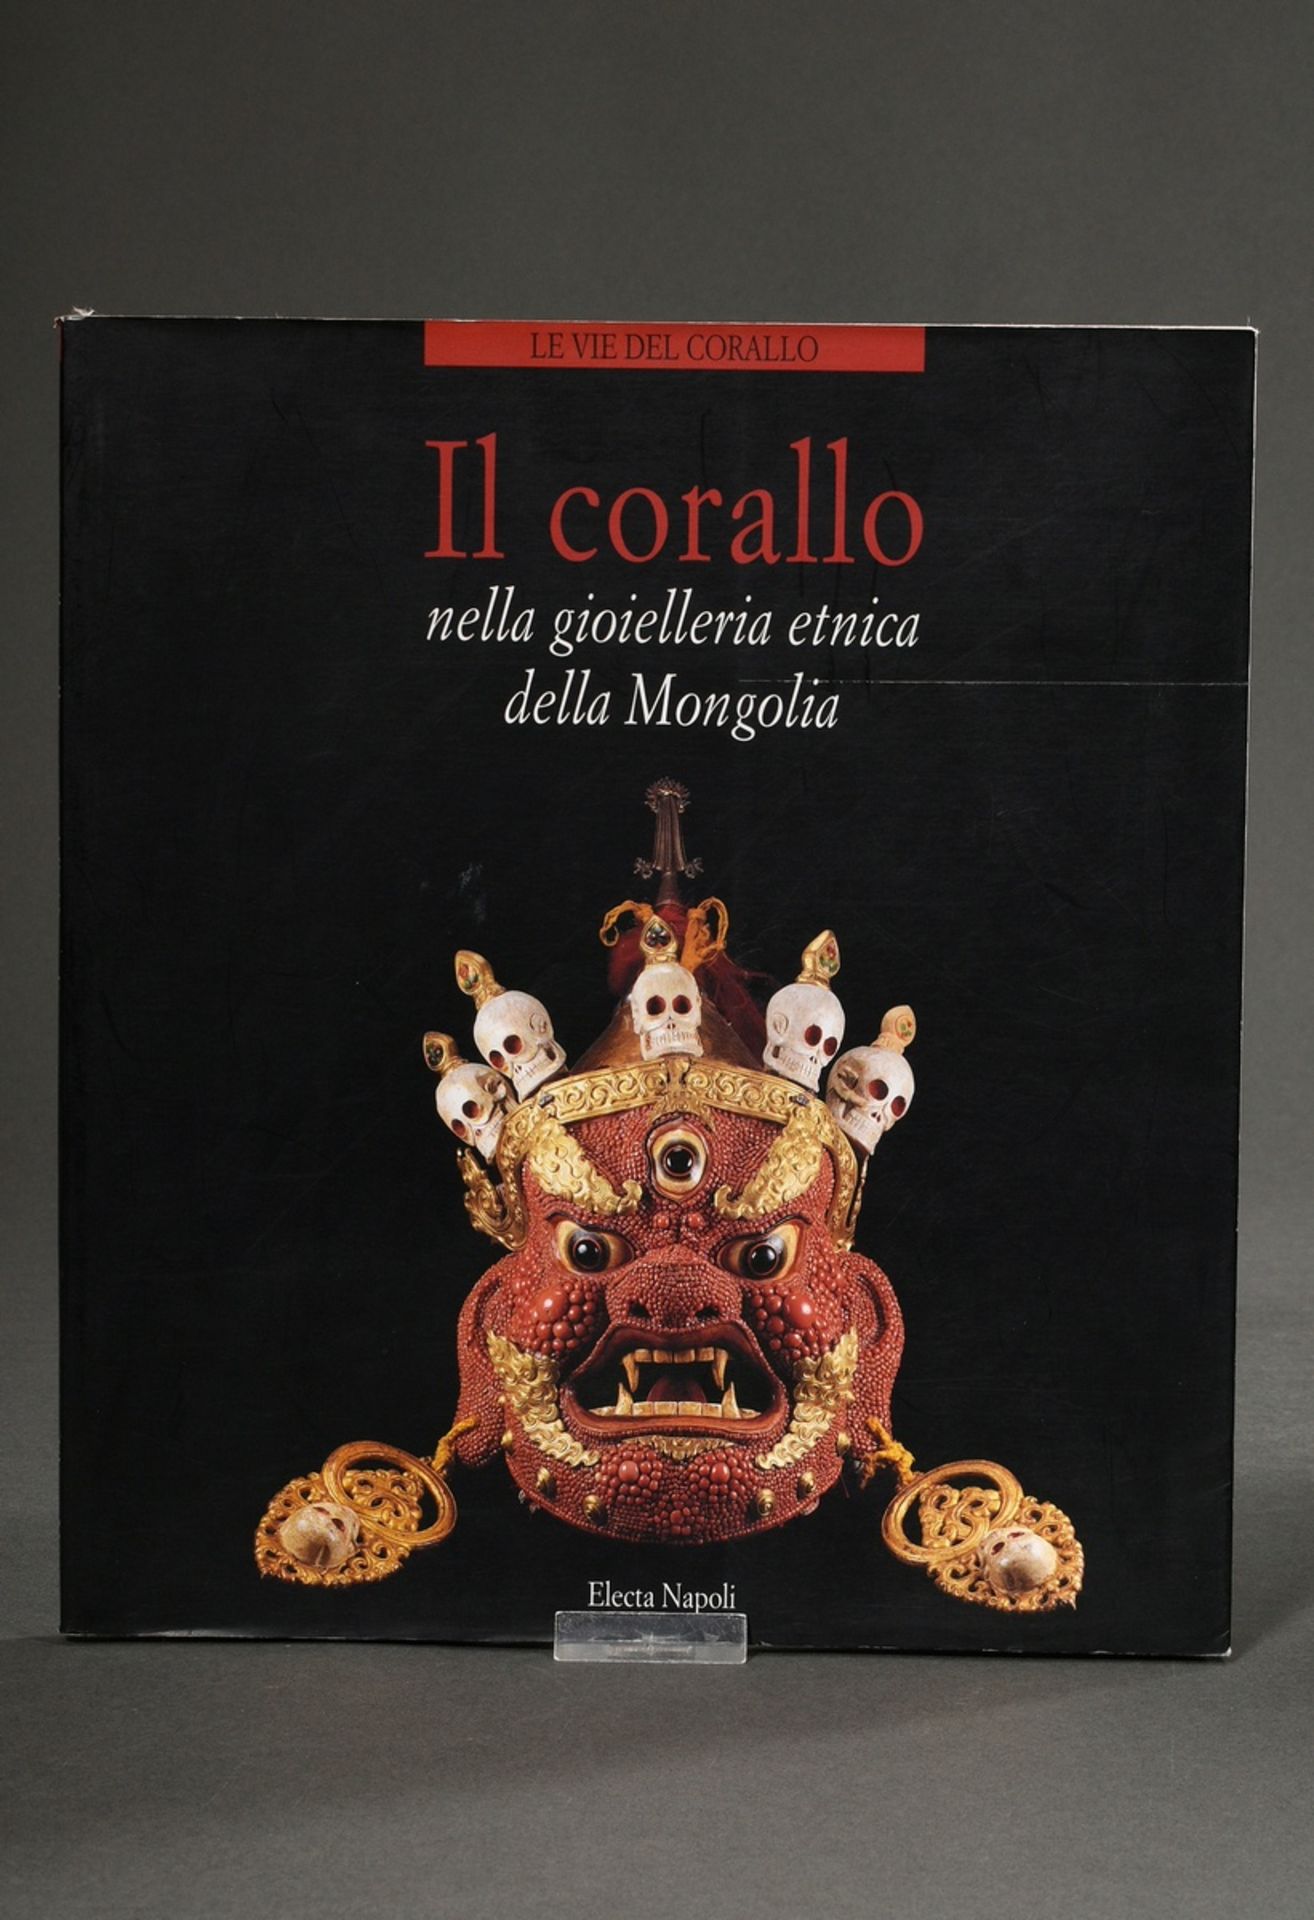 6 Illustrated books "Le Vie deI Corallo" (Mongolia, Indiano, Samarcanda, Saba, Marocco e Algeria, A - Image 8 of 8